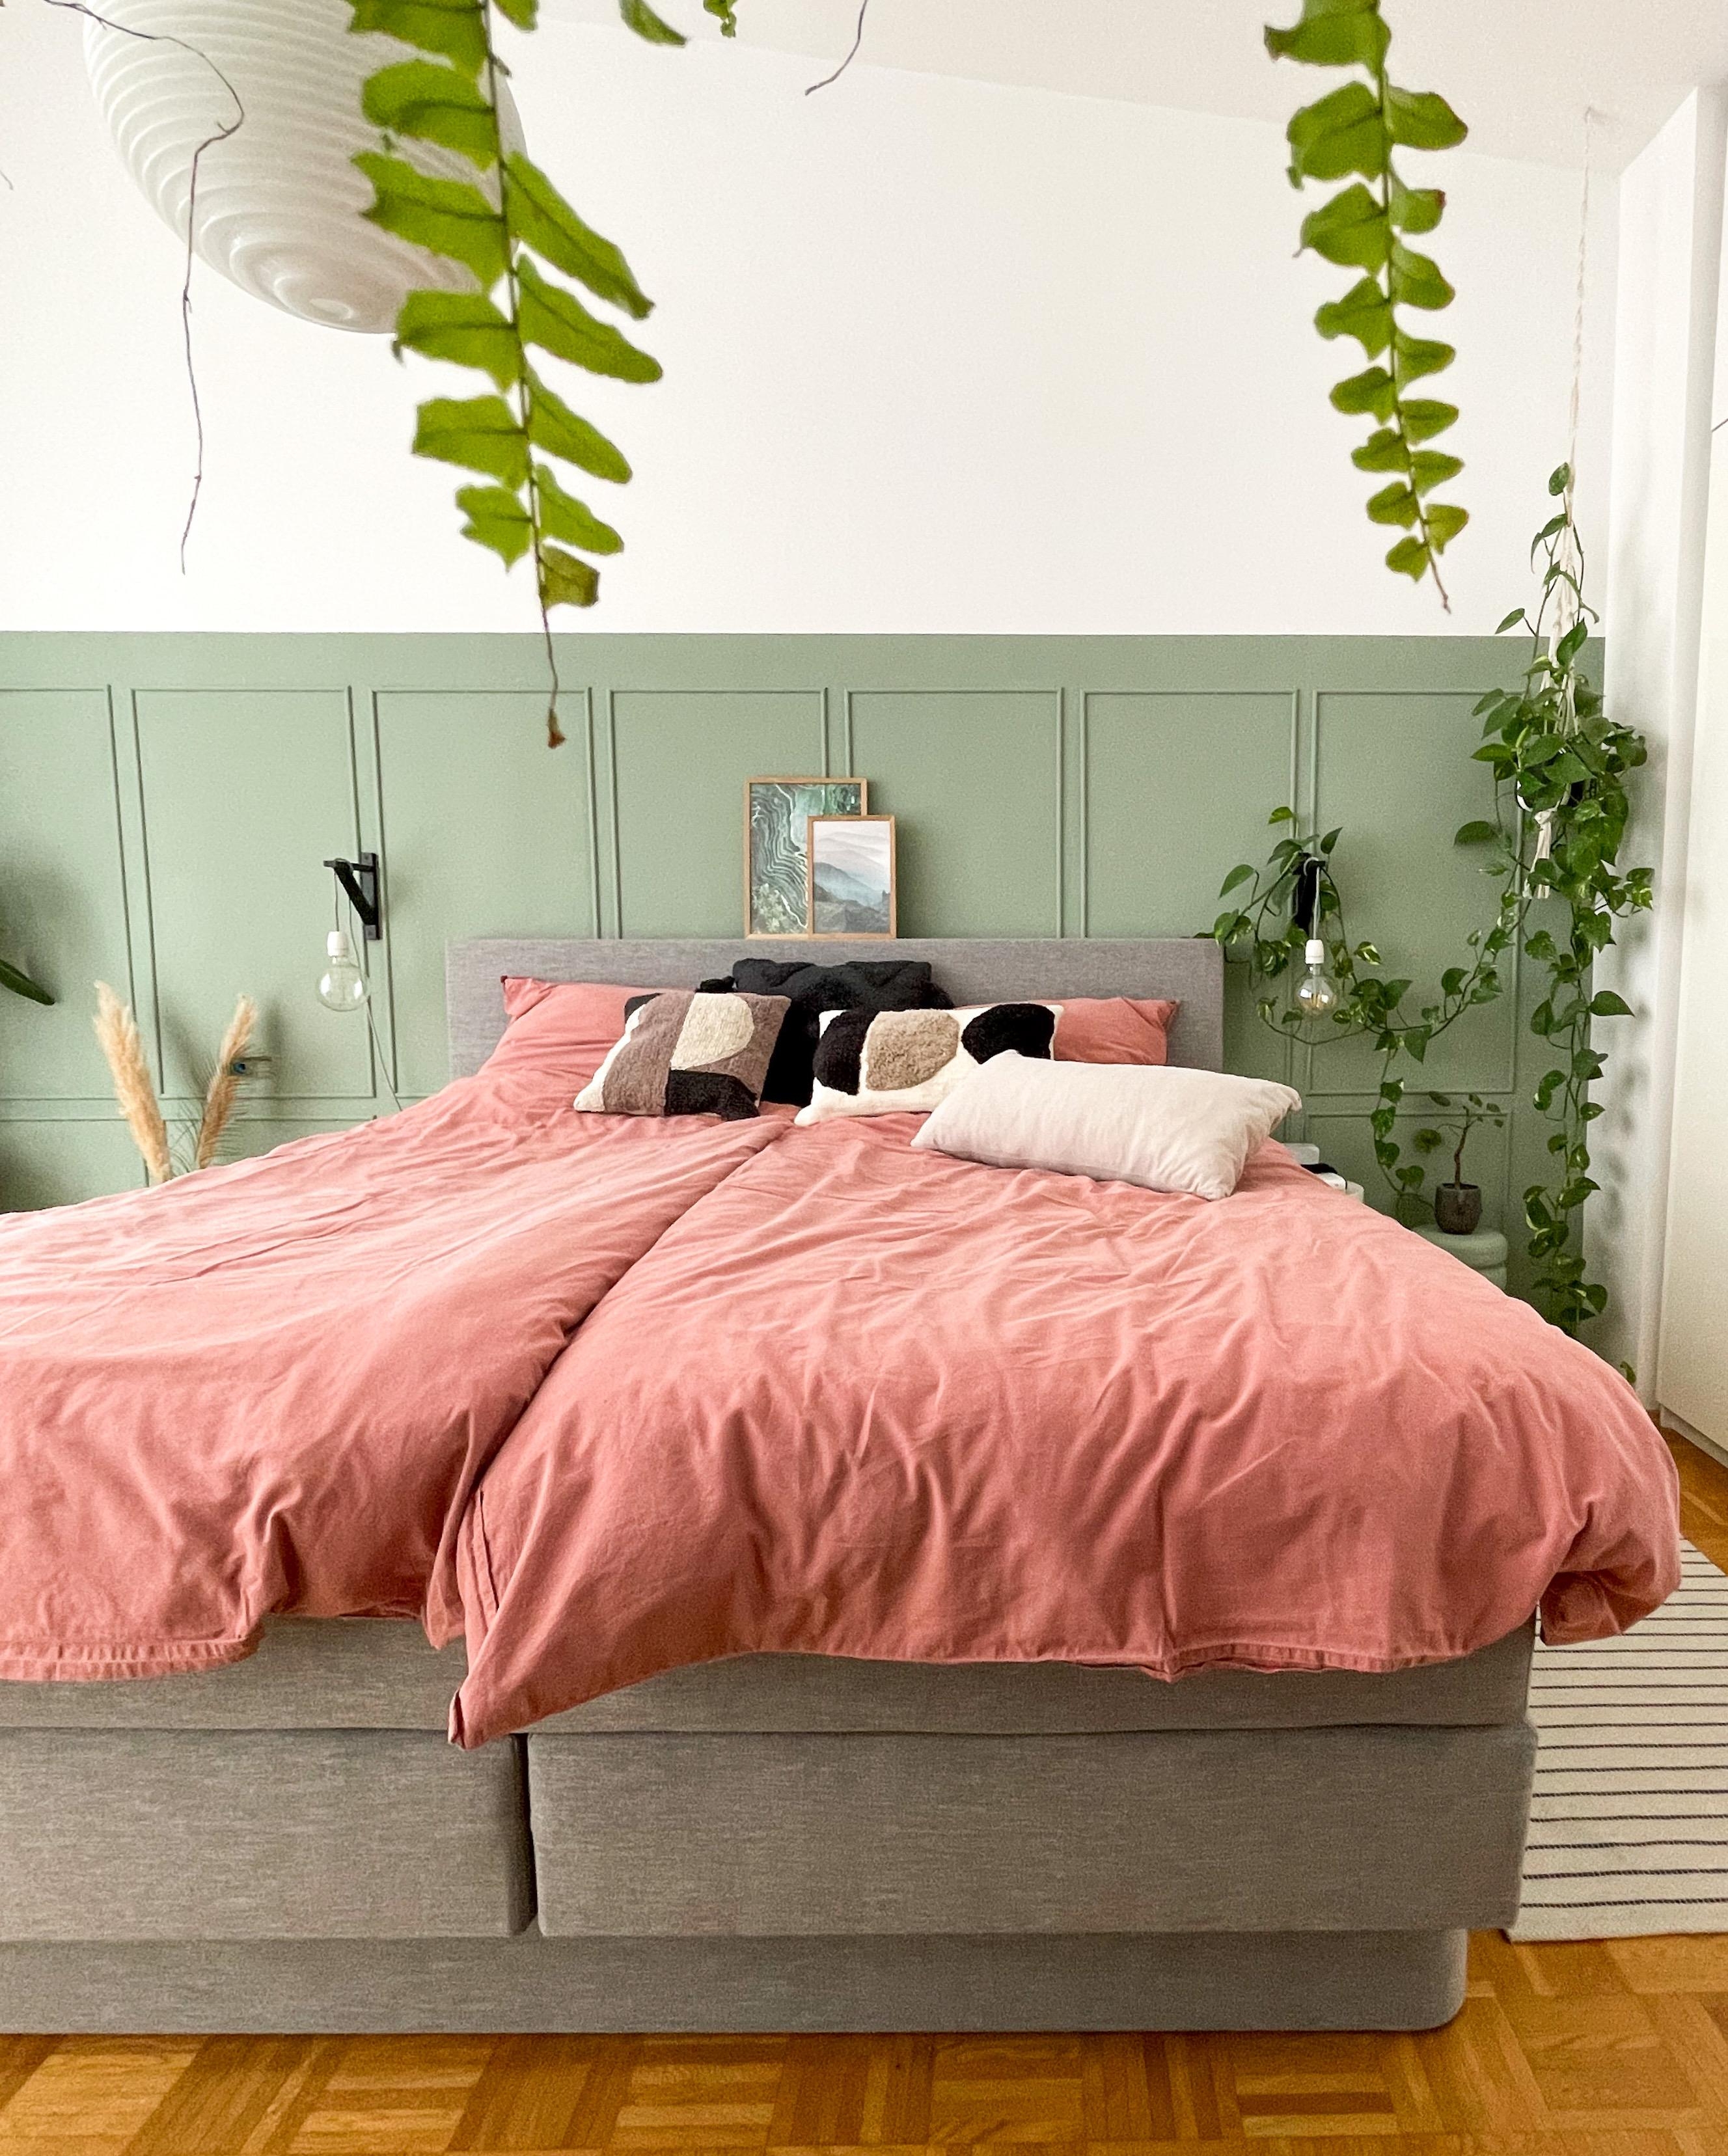 Raus oder rein in die Federn?

#Schlafzimmer #Bett #Pflanzen #Bettwäsche #Wandvertäfung